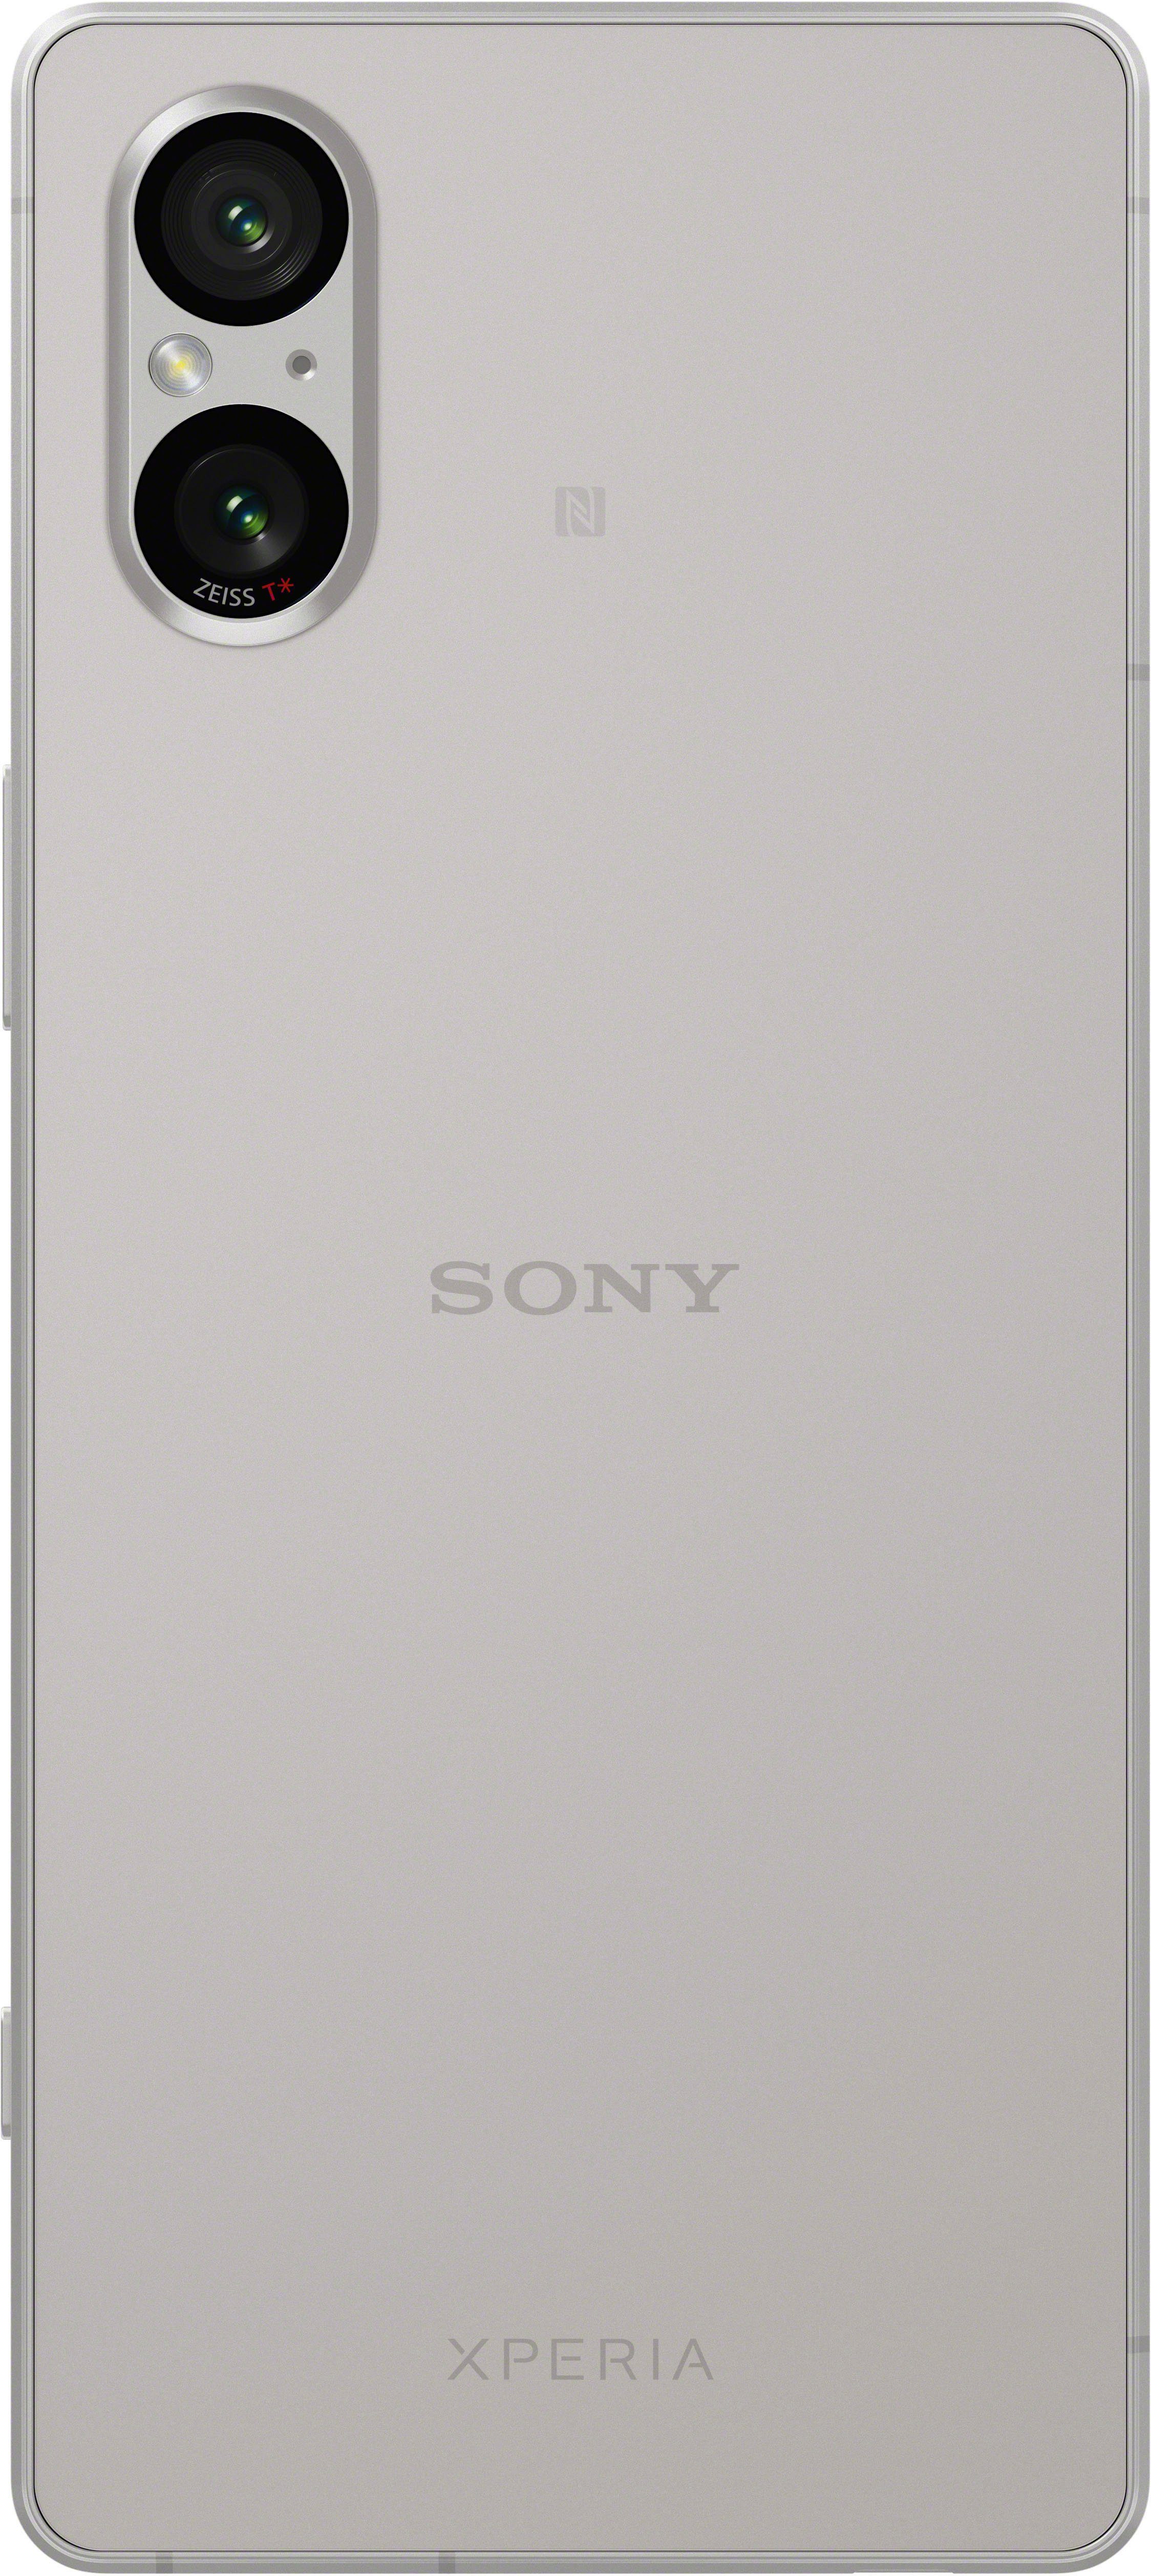 128 Kamera) Smartphone Sony XPERIA MP Speicherplatz, 12 cm/6,1 Zoll, GB (15,49 5V platin-silber